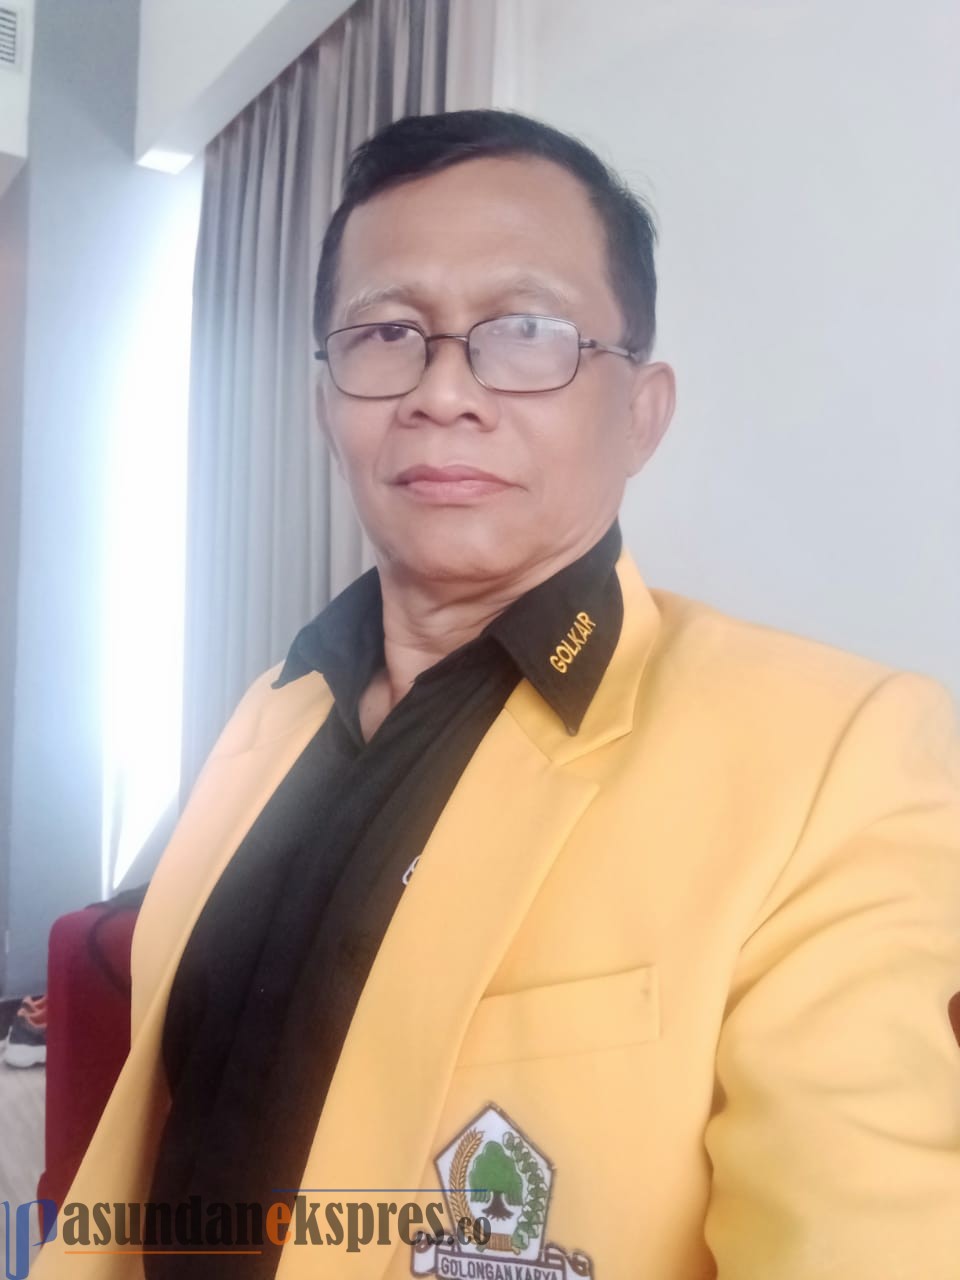 Musda DPD Golkar Bandung Barat telah usai, Guras : Ironis Panitia Dituduh Tidak Netral